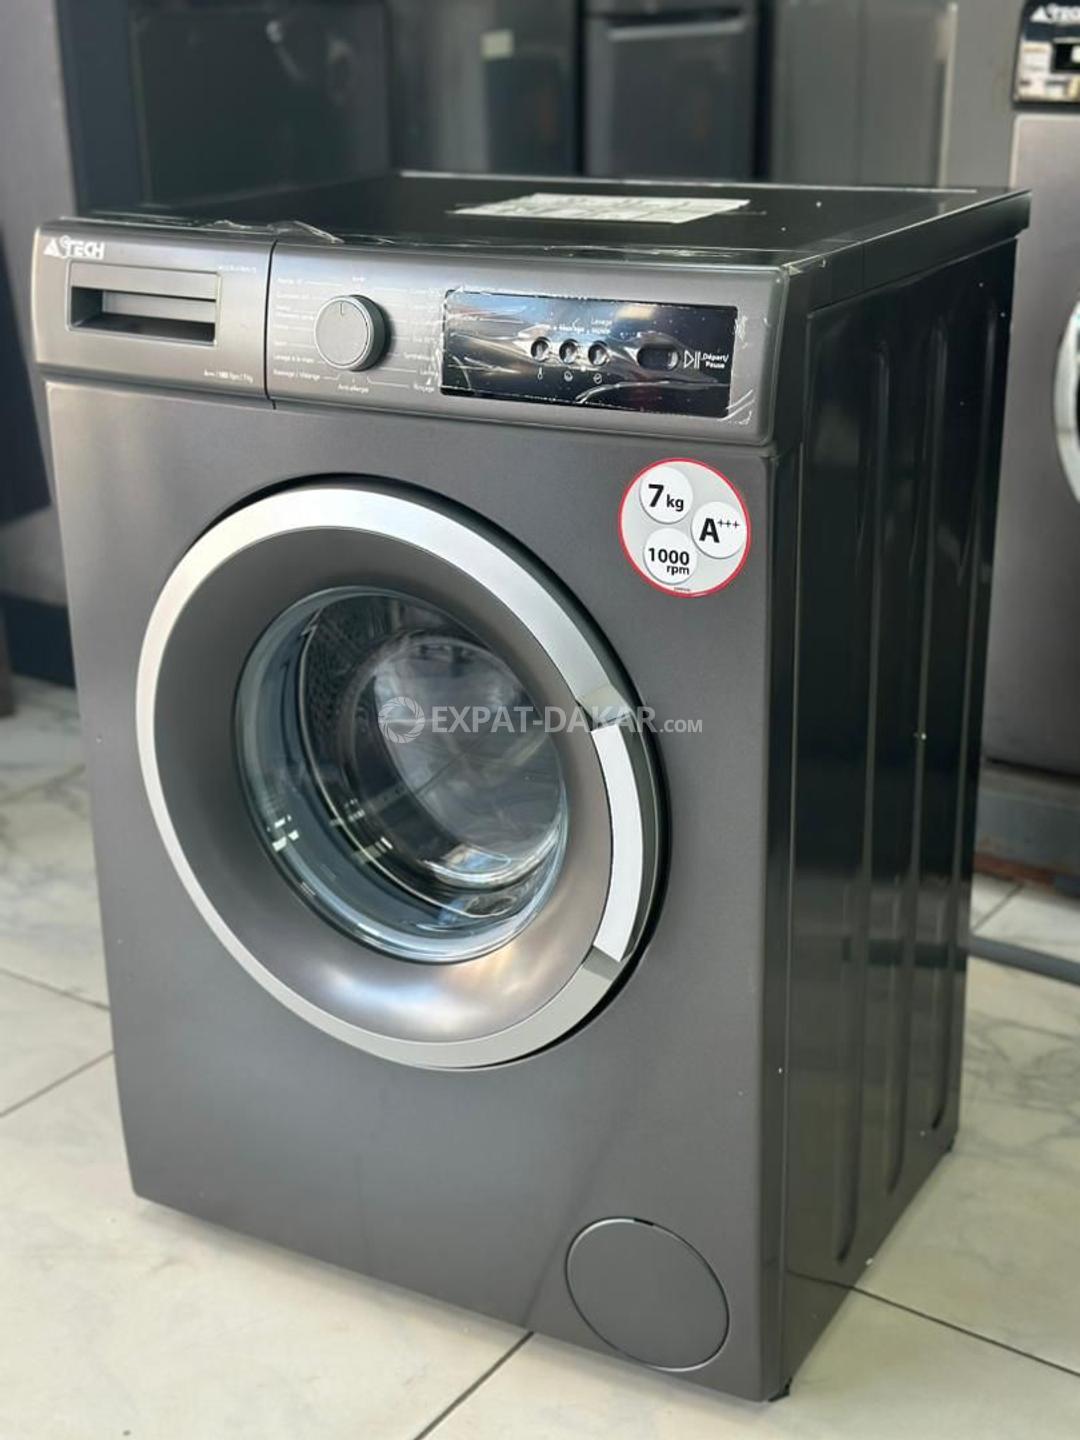 Astech Machine à laver semi-automatique - 7kg - Prix pas cher